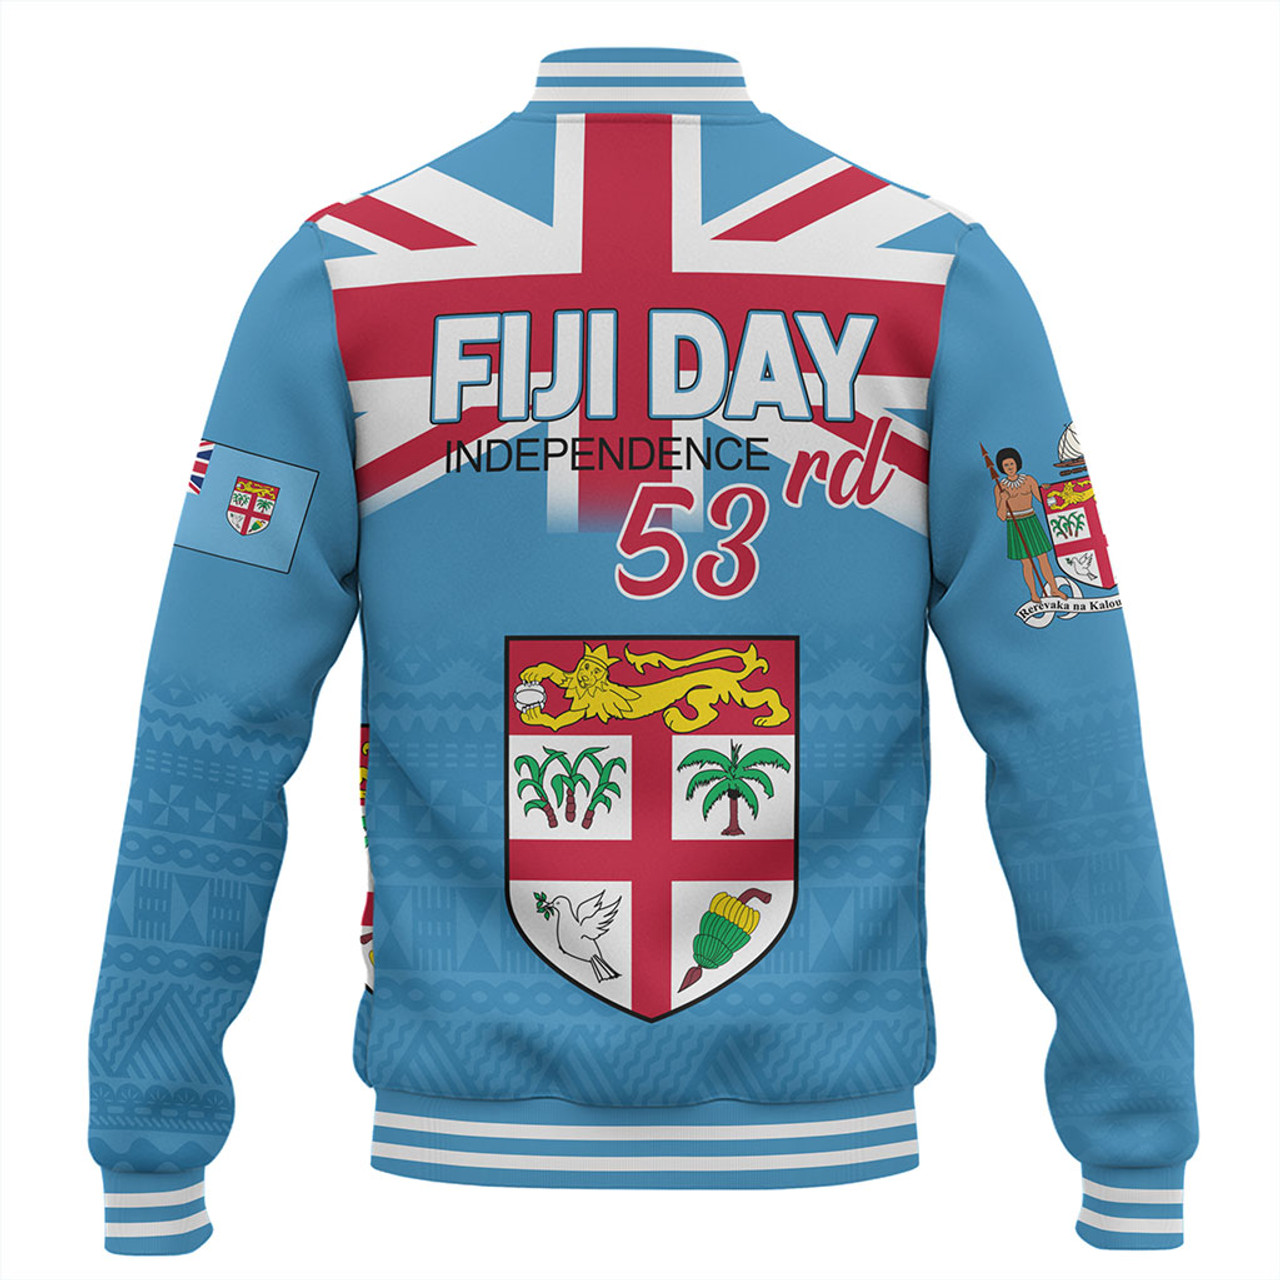 Fiji Baseball Jacket Independence Day 2023